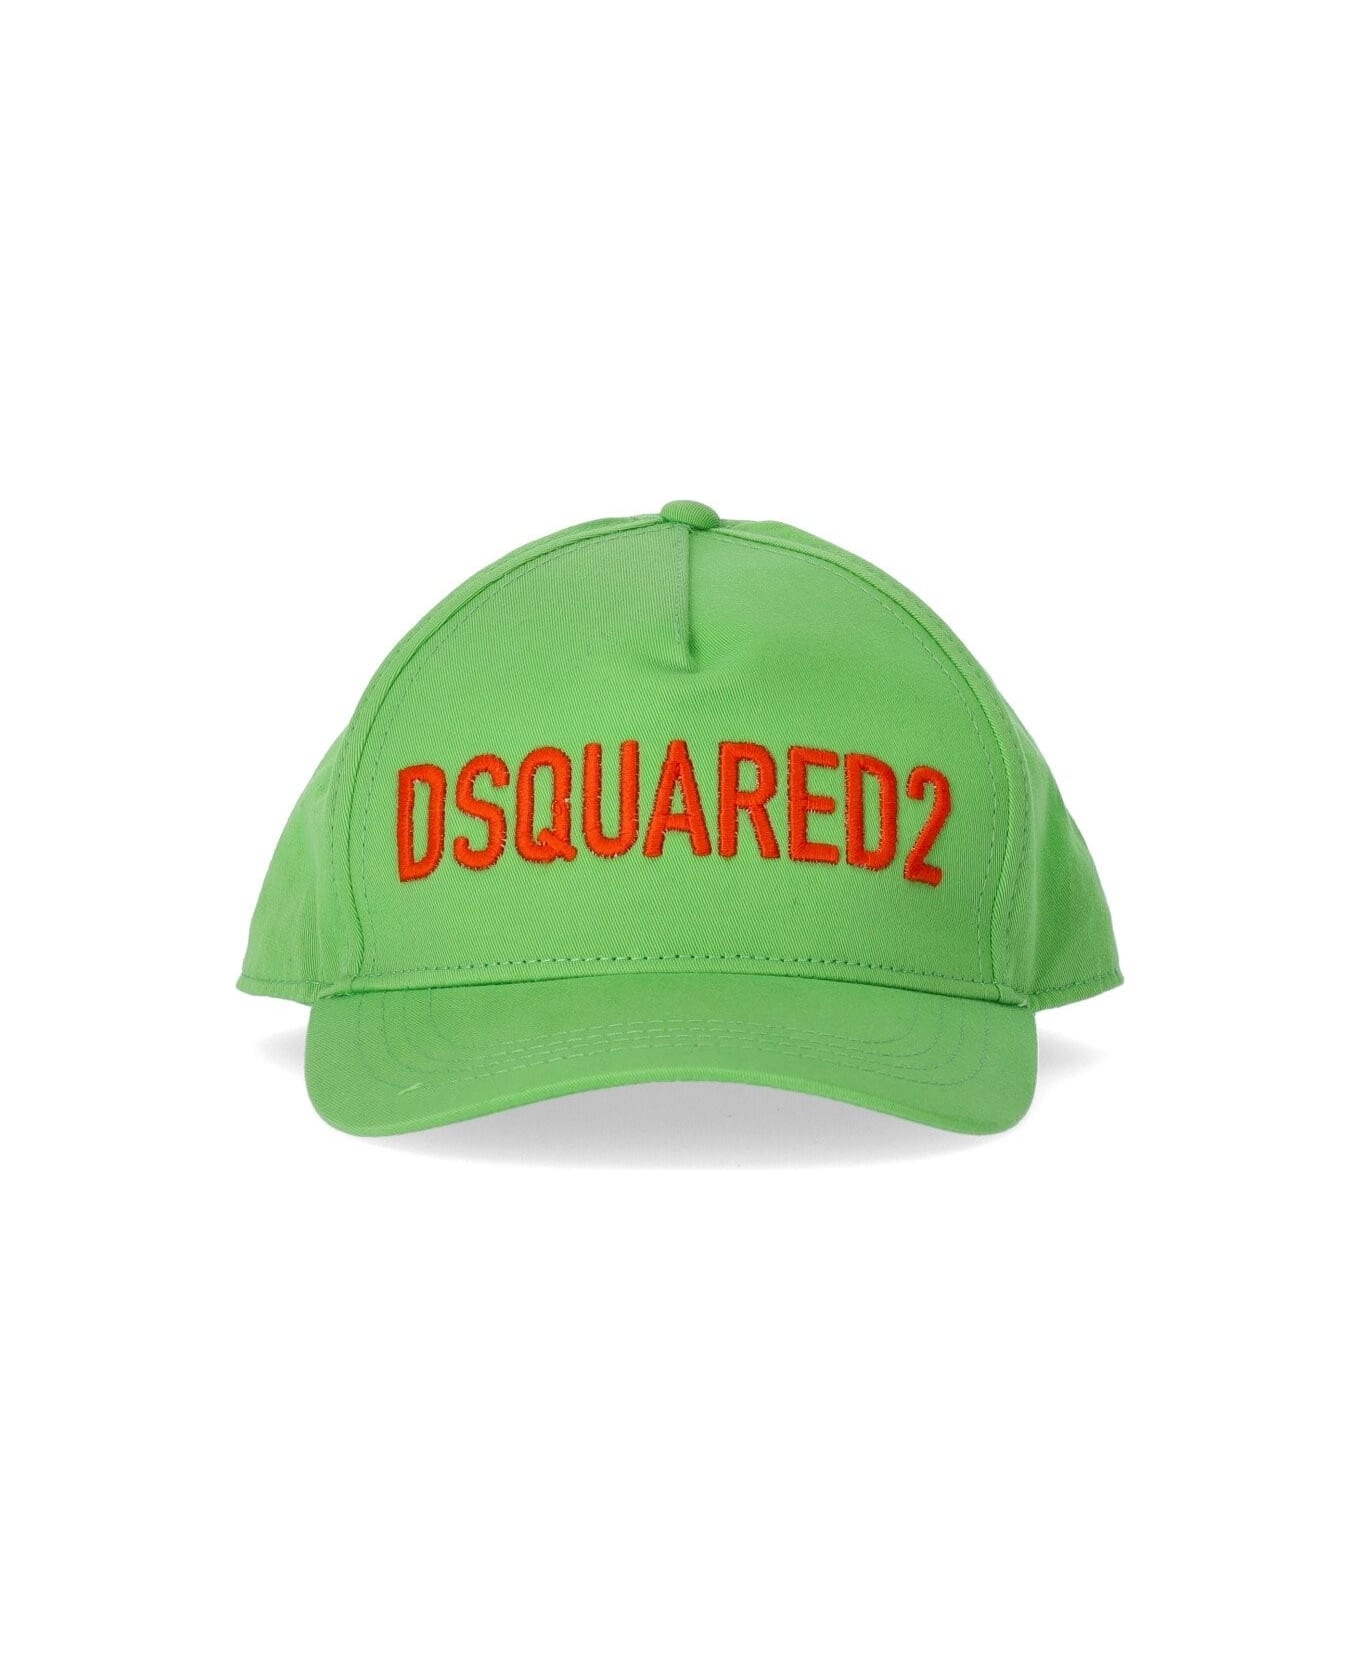 Dsquared2 Technicolor Acid Green Baseball Cap - 3